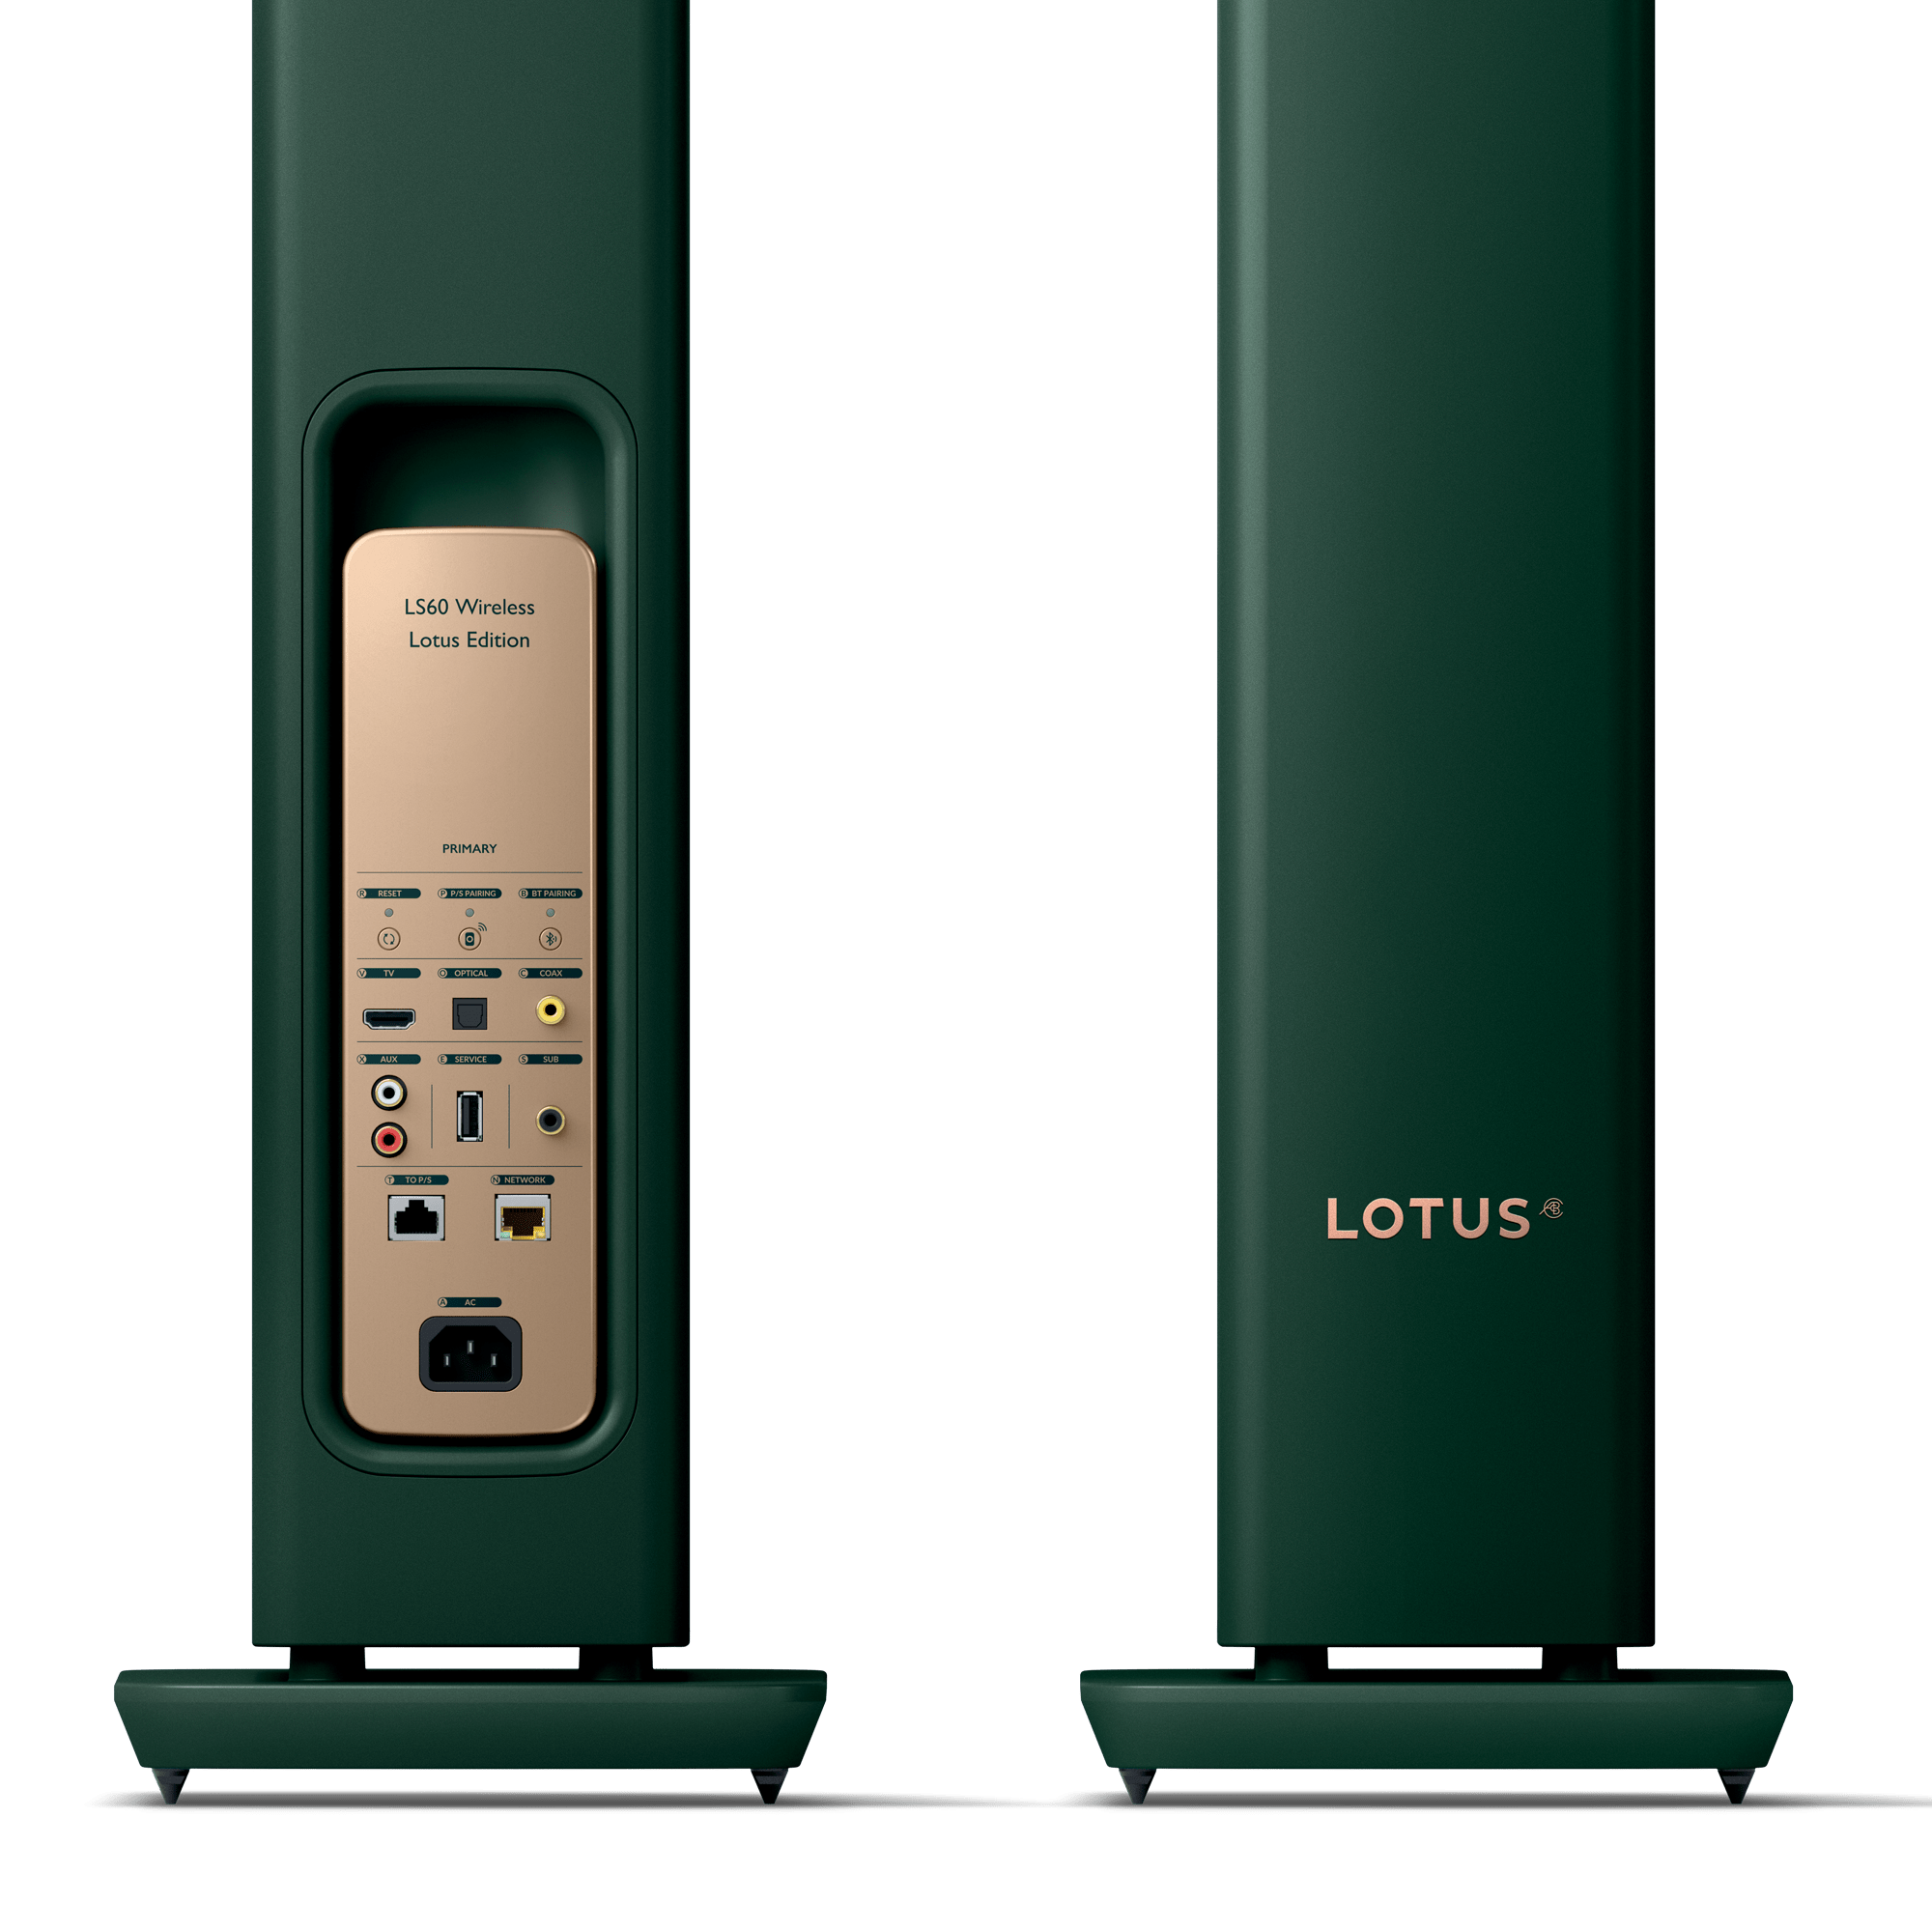 Edición LS60 Wireless Lotus